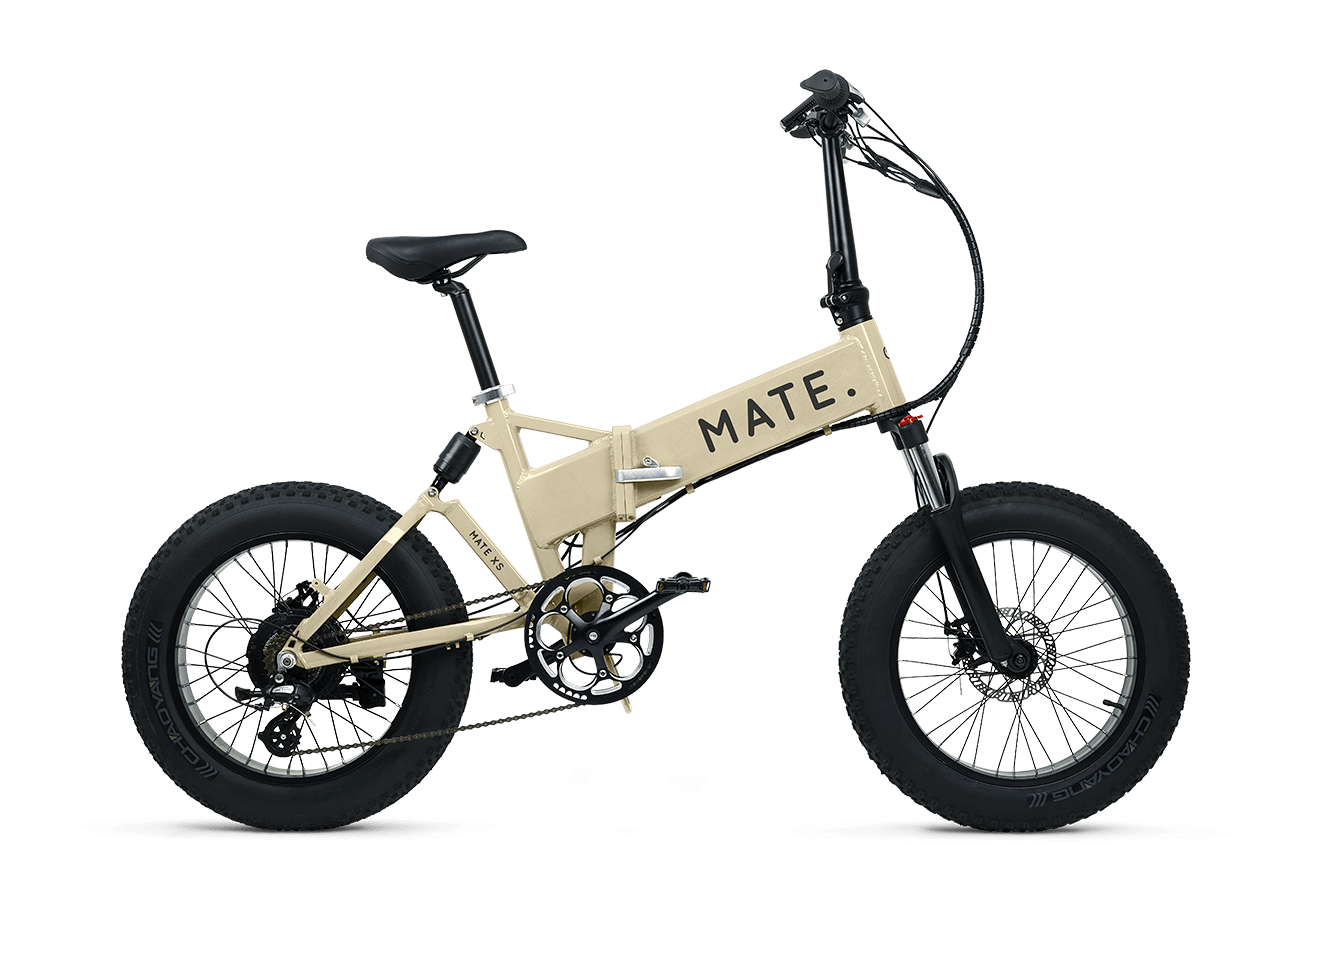 mate x bike 750 review